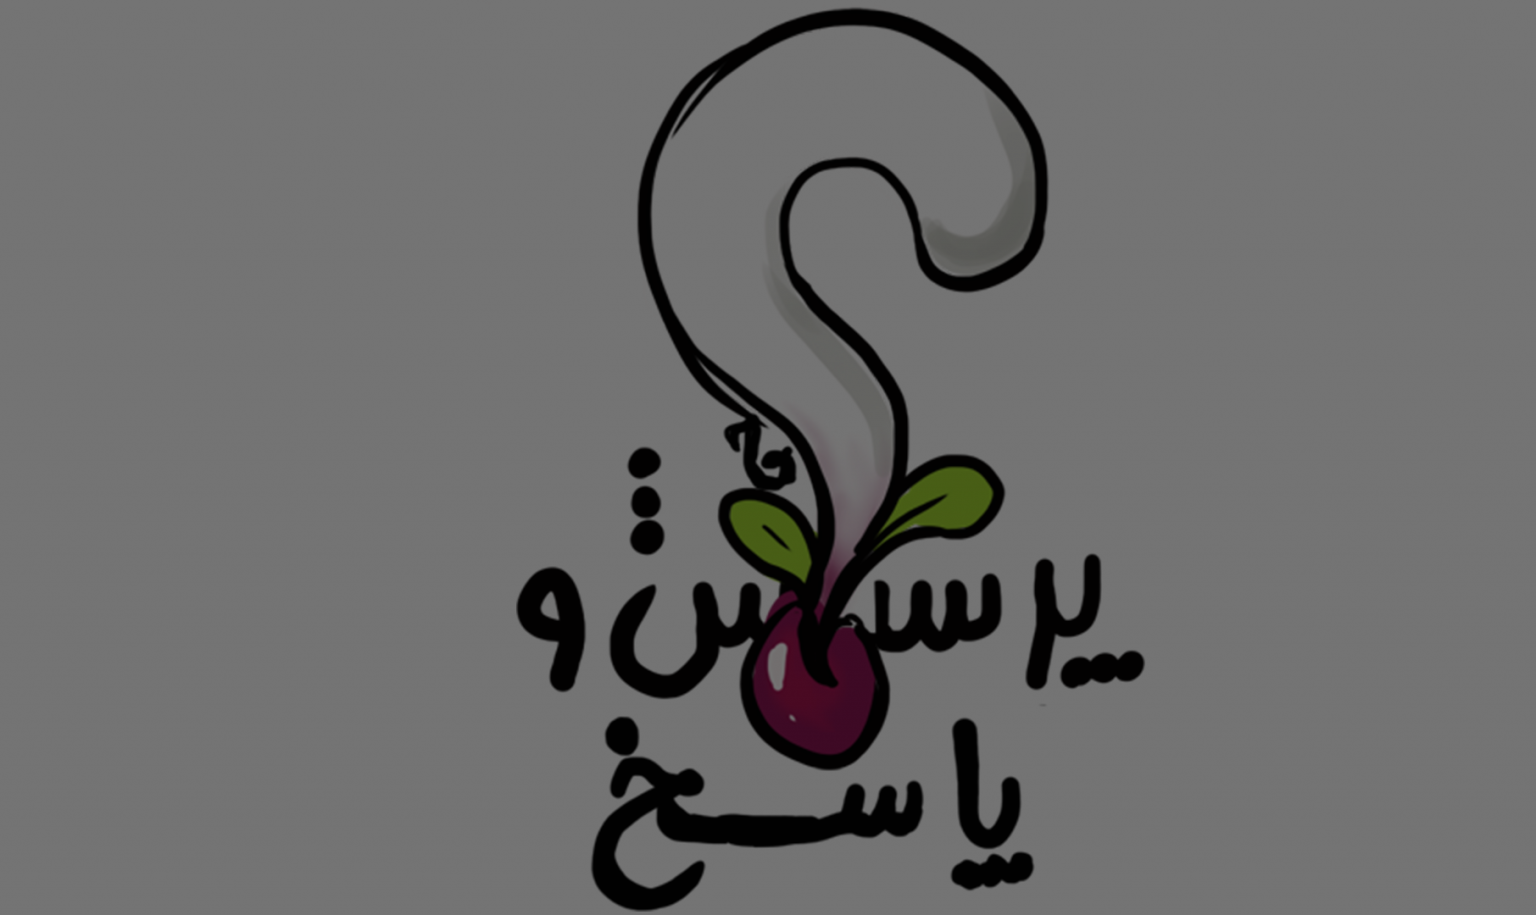 لیست قیمت روز میدان میوه اصفهان_61c0116940ad1.png